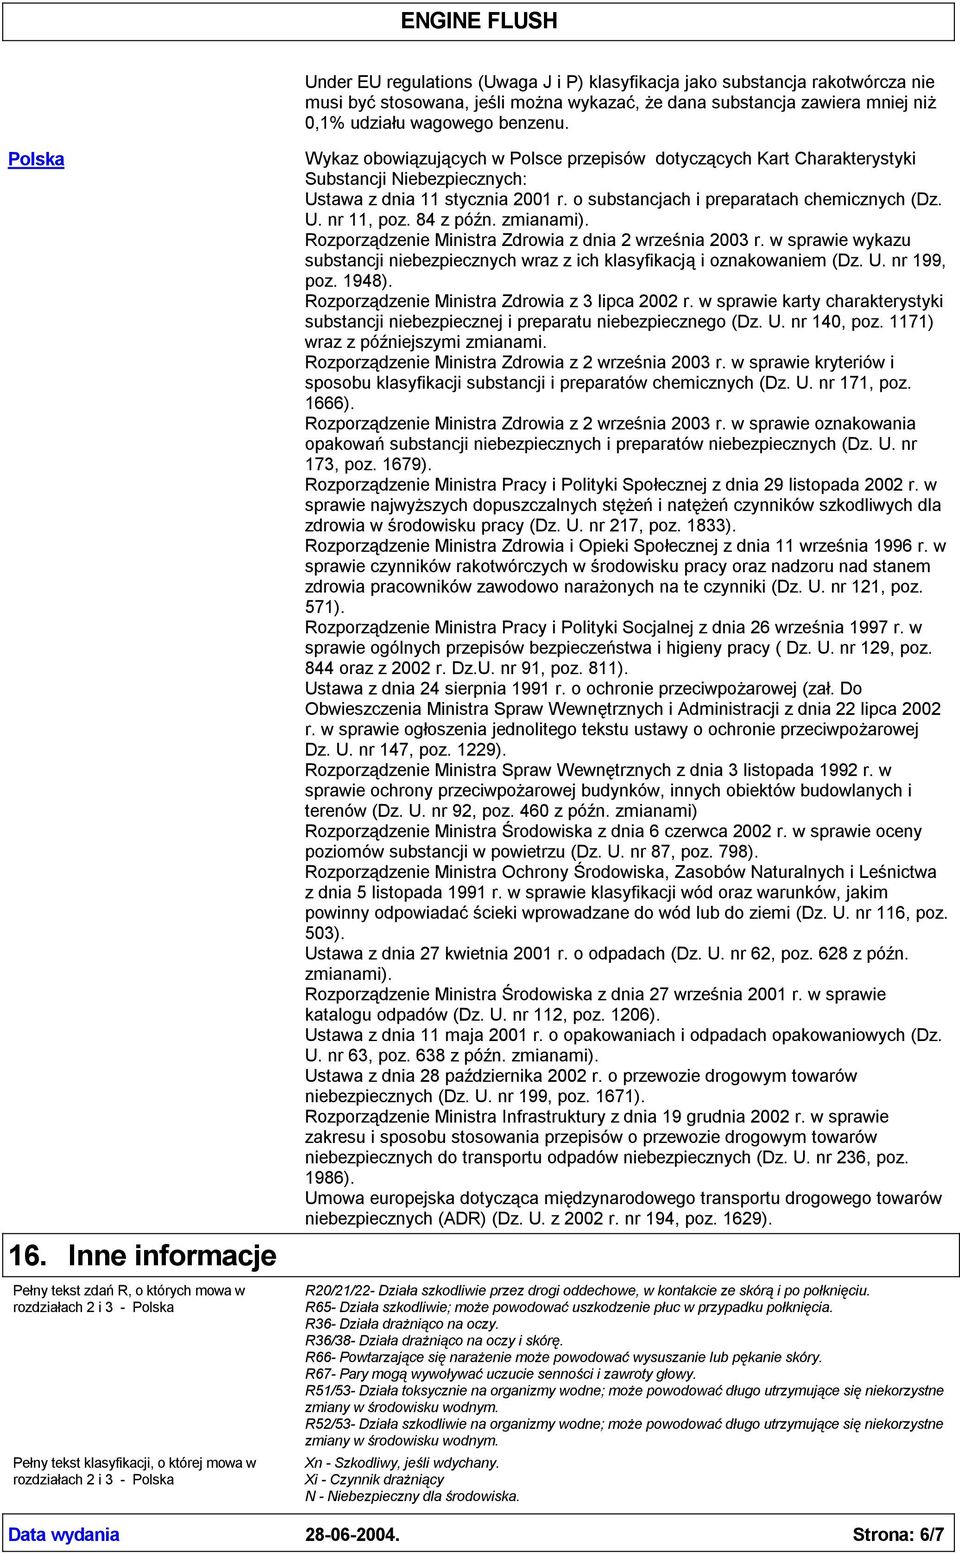 Kart Charakterystyki Substancji Niebezpiecznych: Ustawa z dnia 11 stycznia 2001 r. o substancjach i preparatach chemicznych (Dz. U. nr 11, poz. 84 z późn. zmianami).